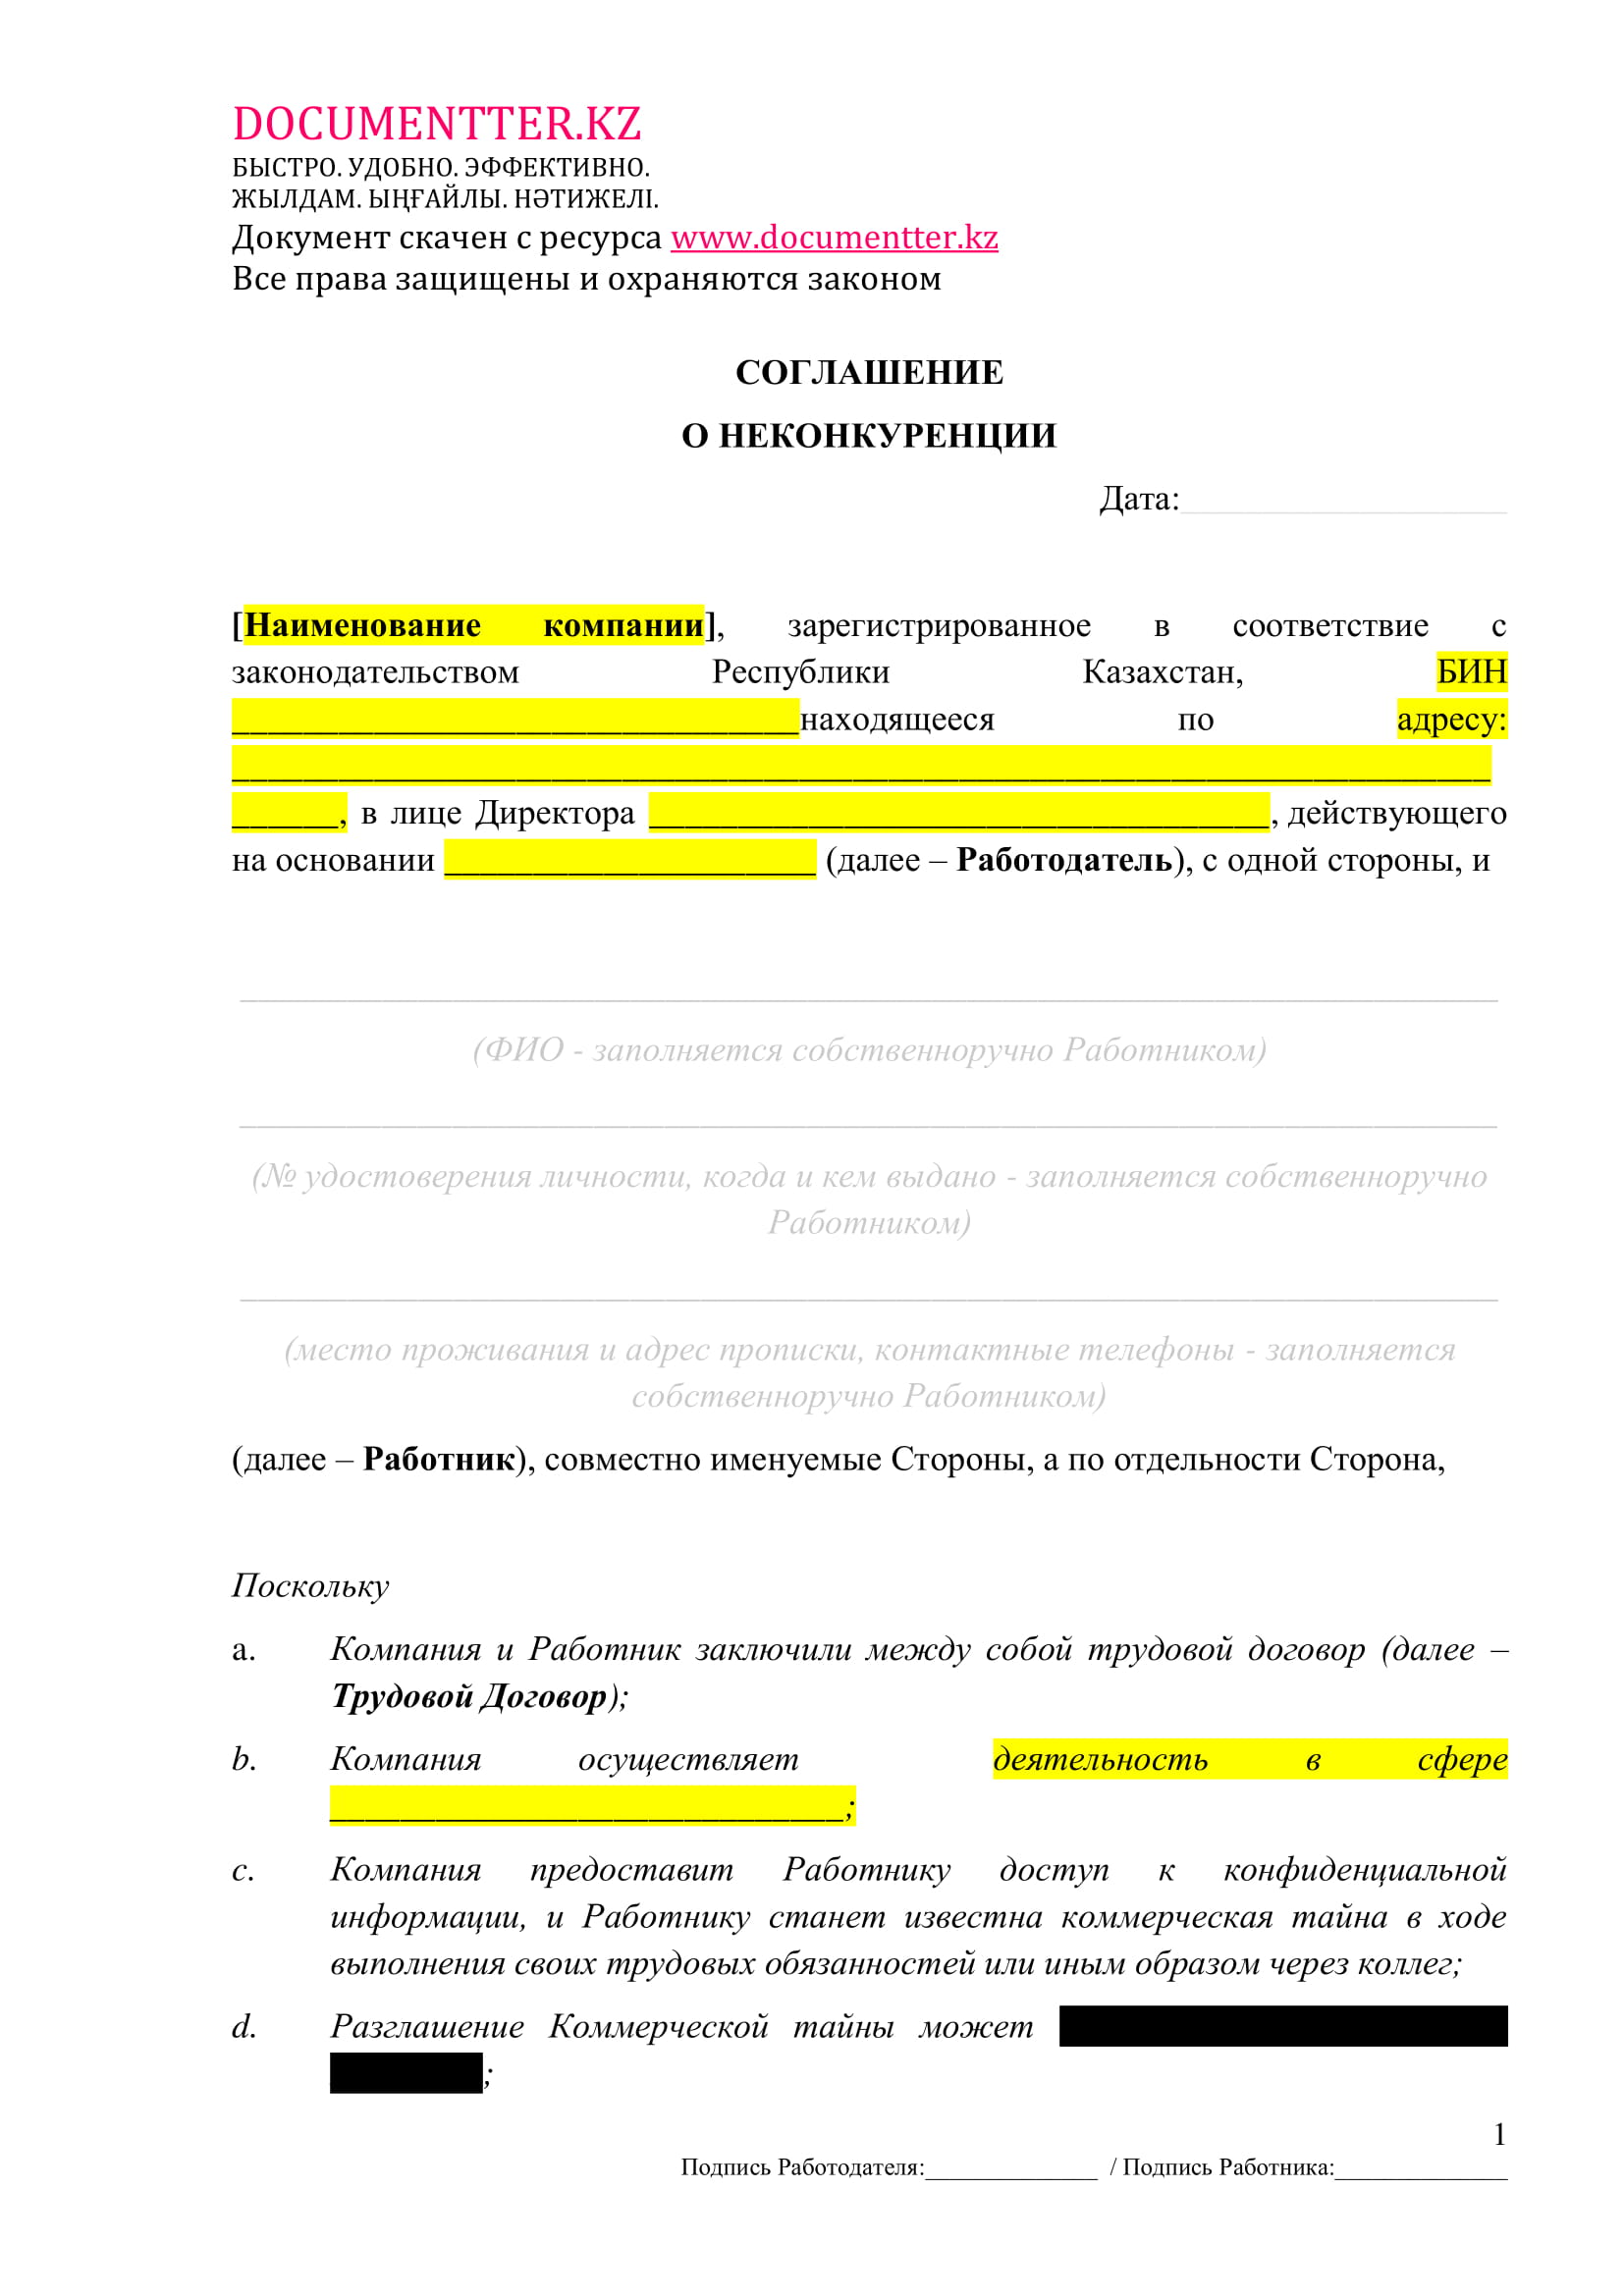 Соглашение о неконкуренции 6 | documentter.kz в Казахстане 